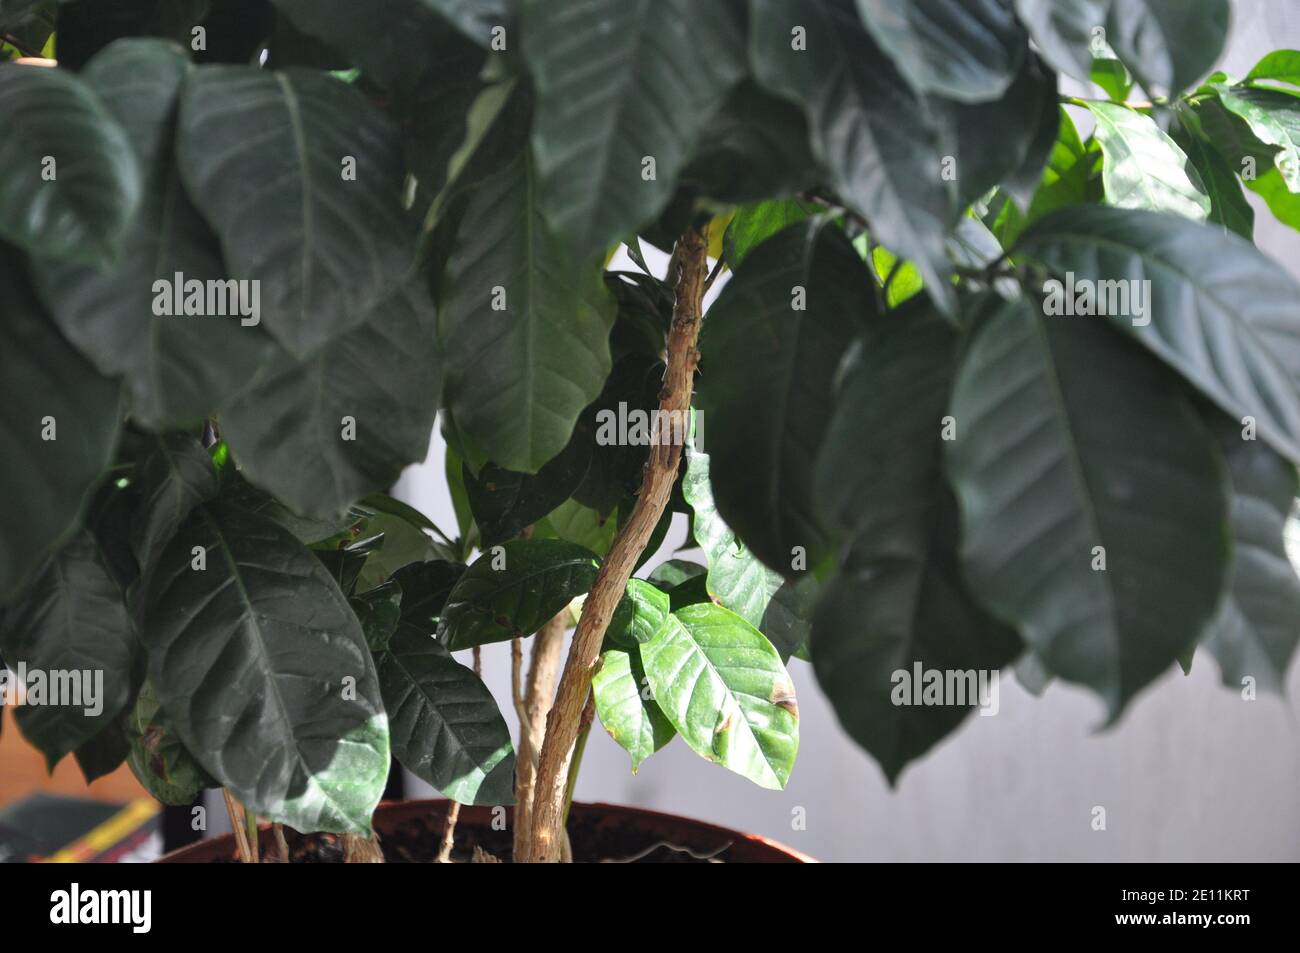 Coffee plant Coffea L. in a pot. Stock Photo